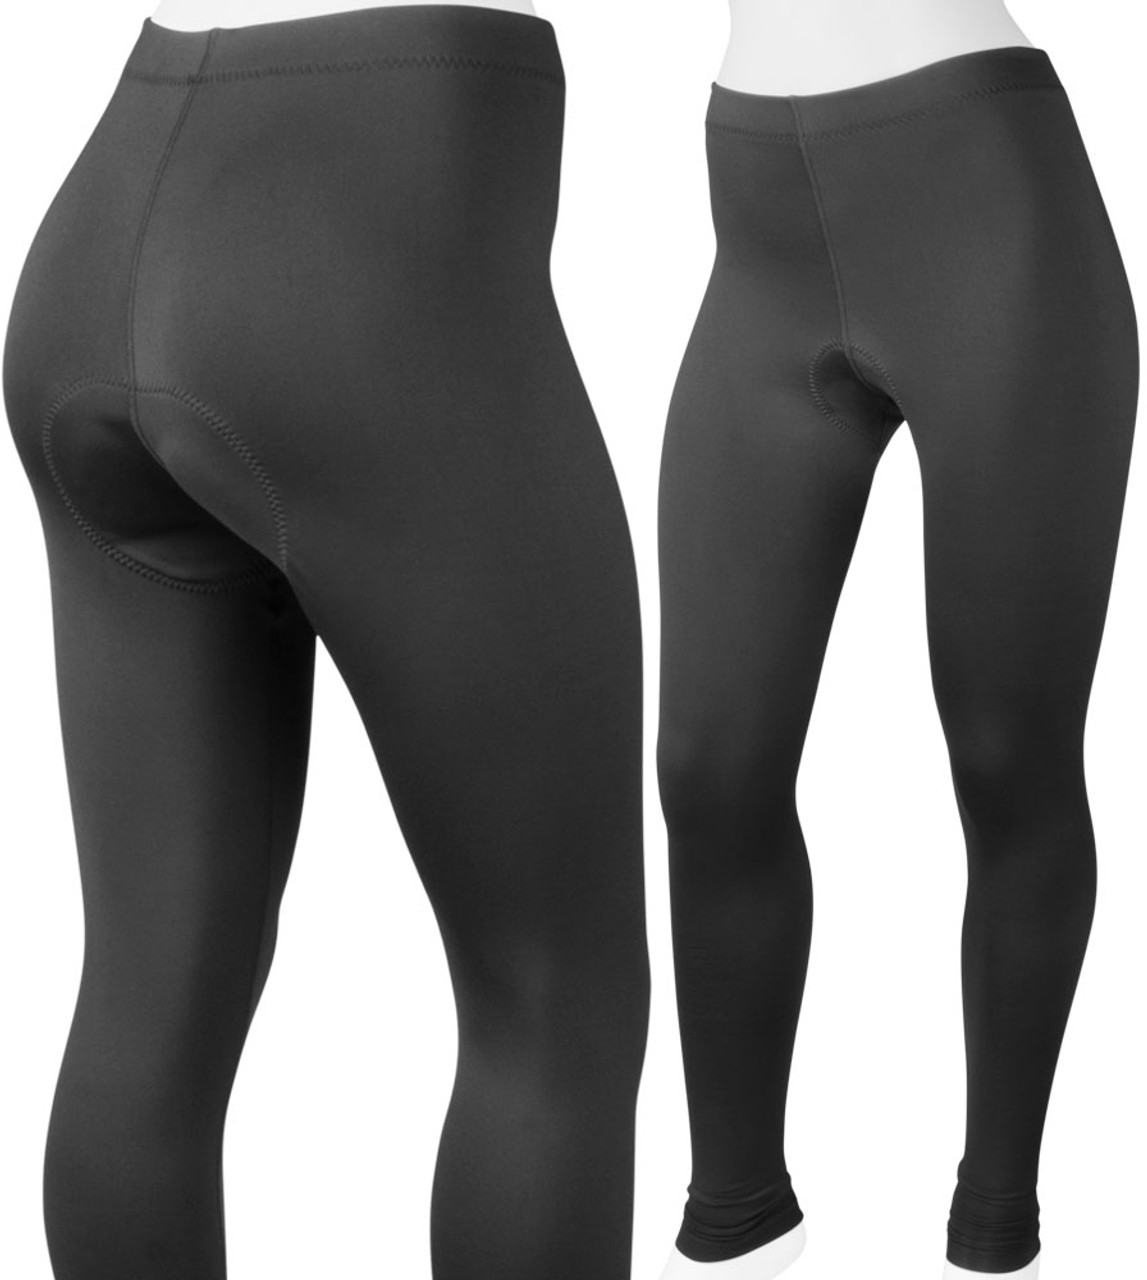 Black Cycling Pants & Tights.